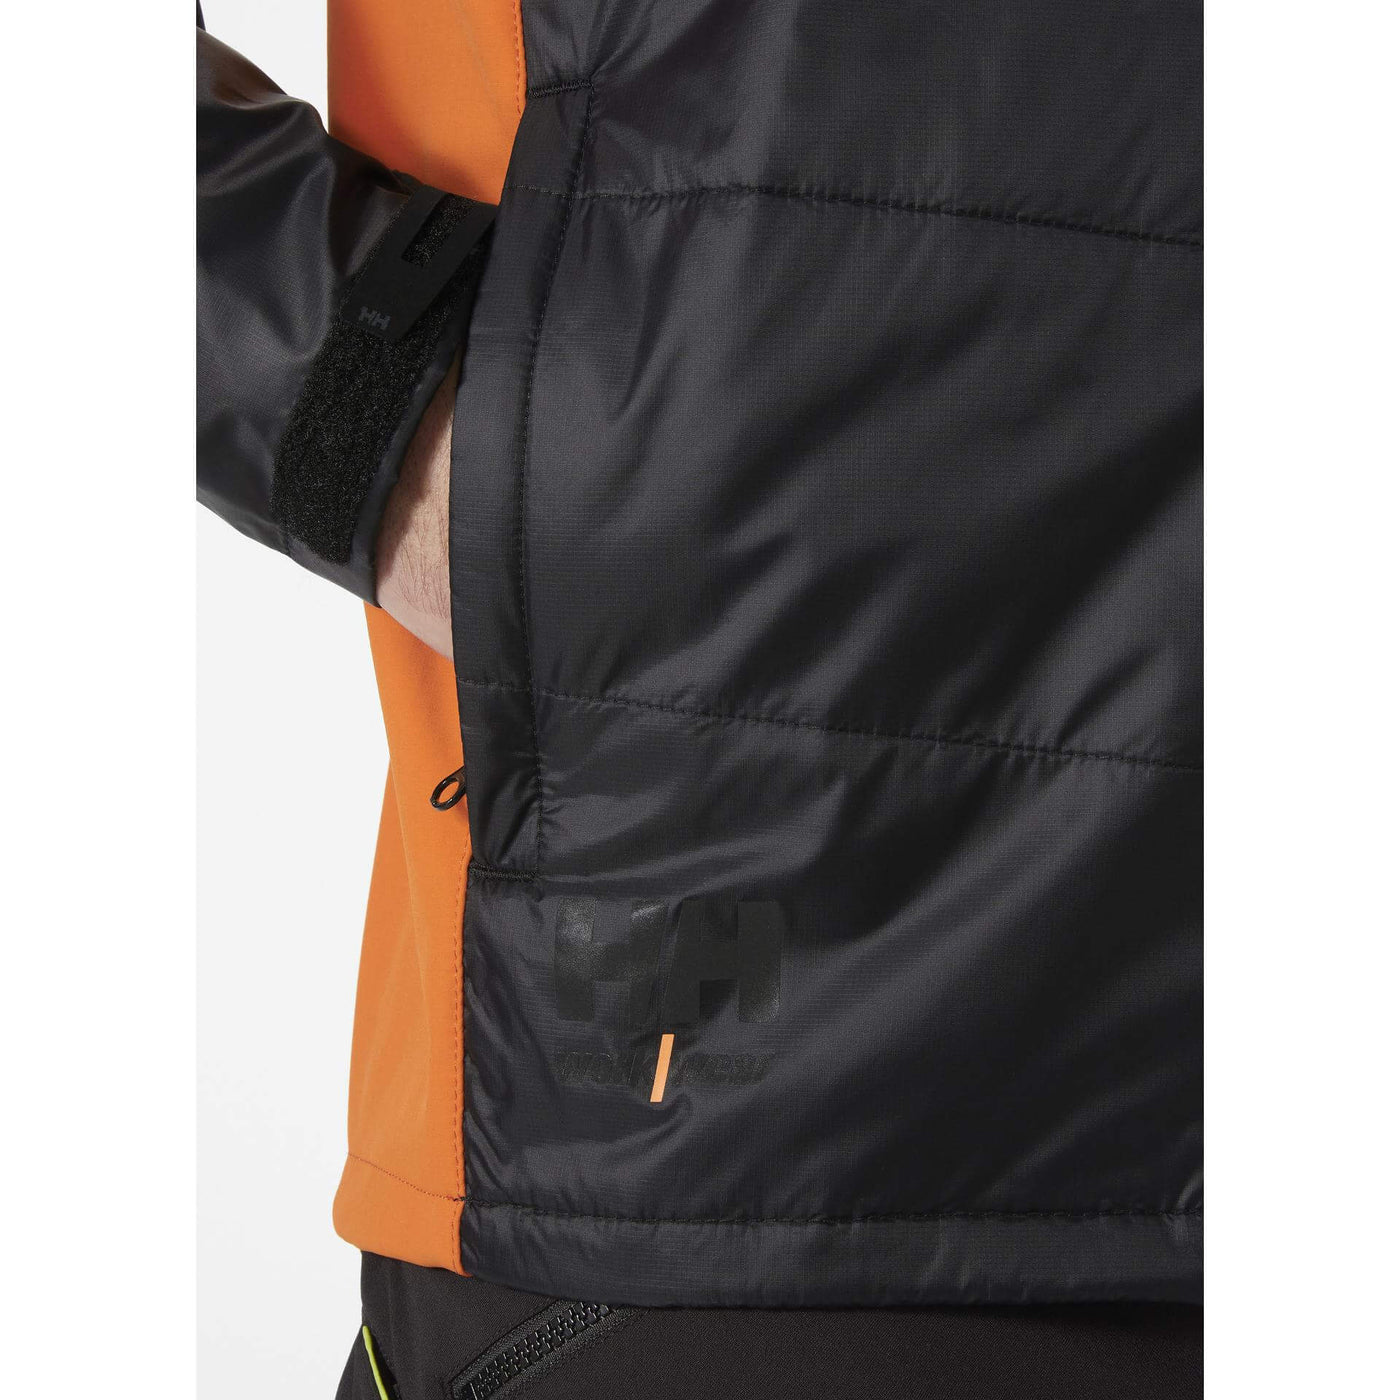 Helly Hansen Kensington Insulated Jacket Black/Dark Orange Feature 1#colour_black-dark-orange